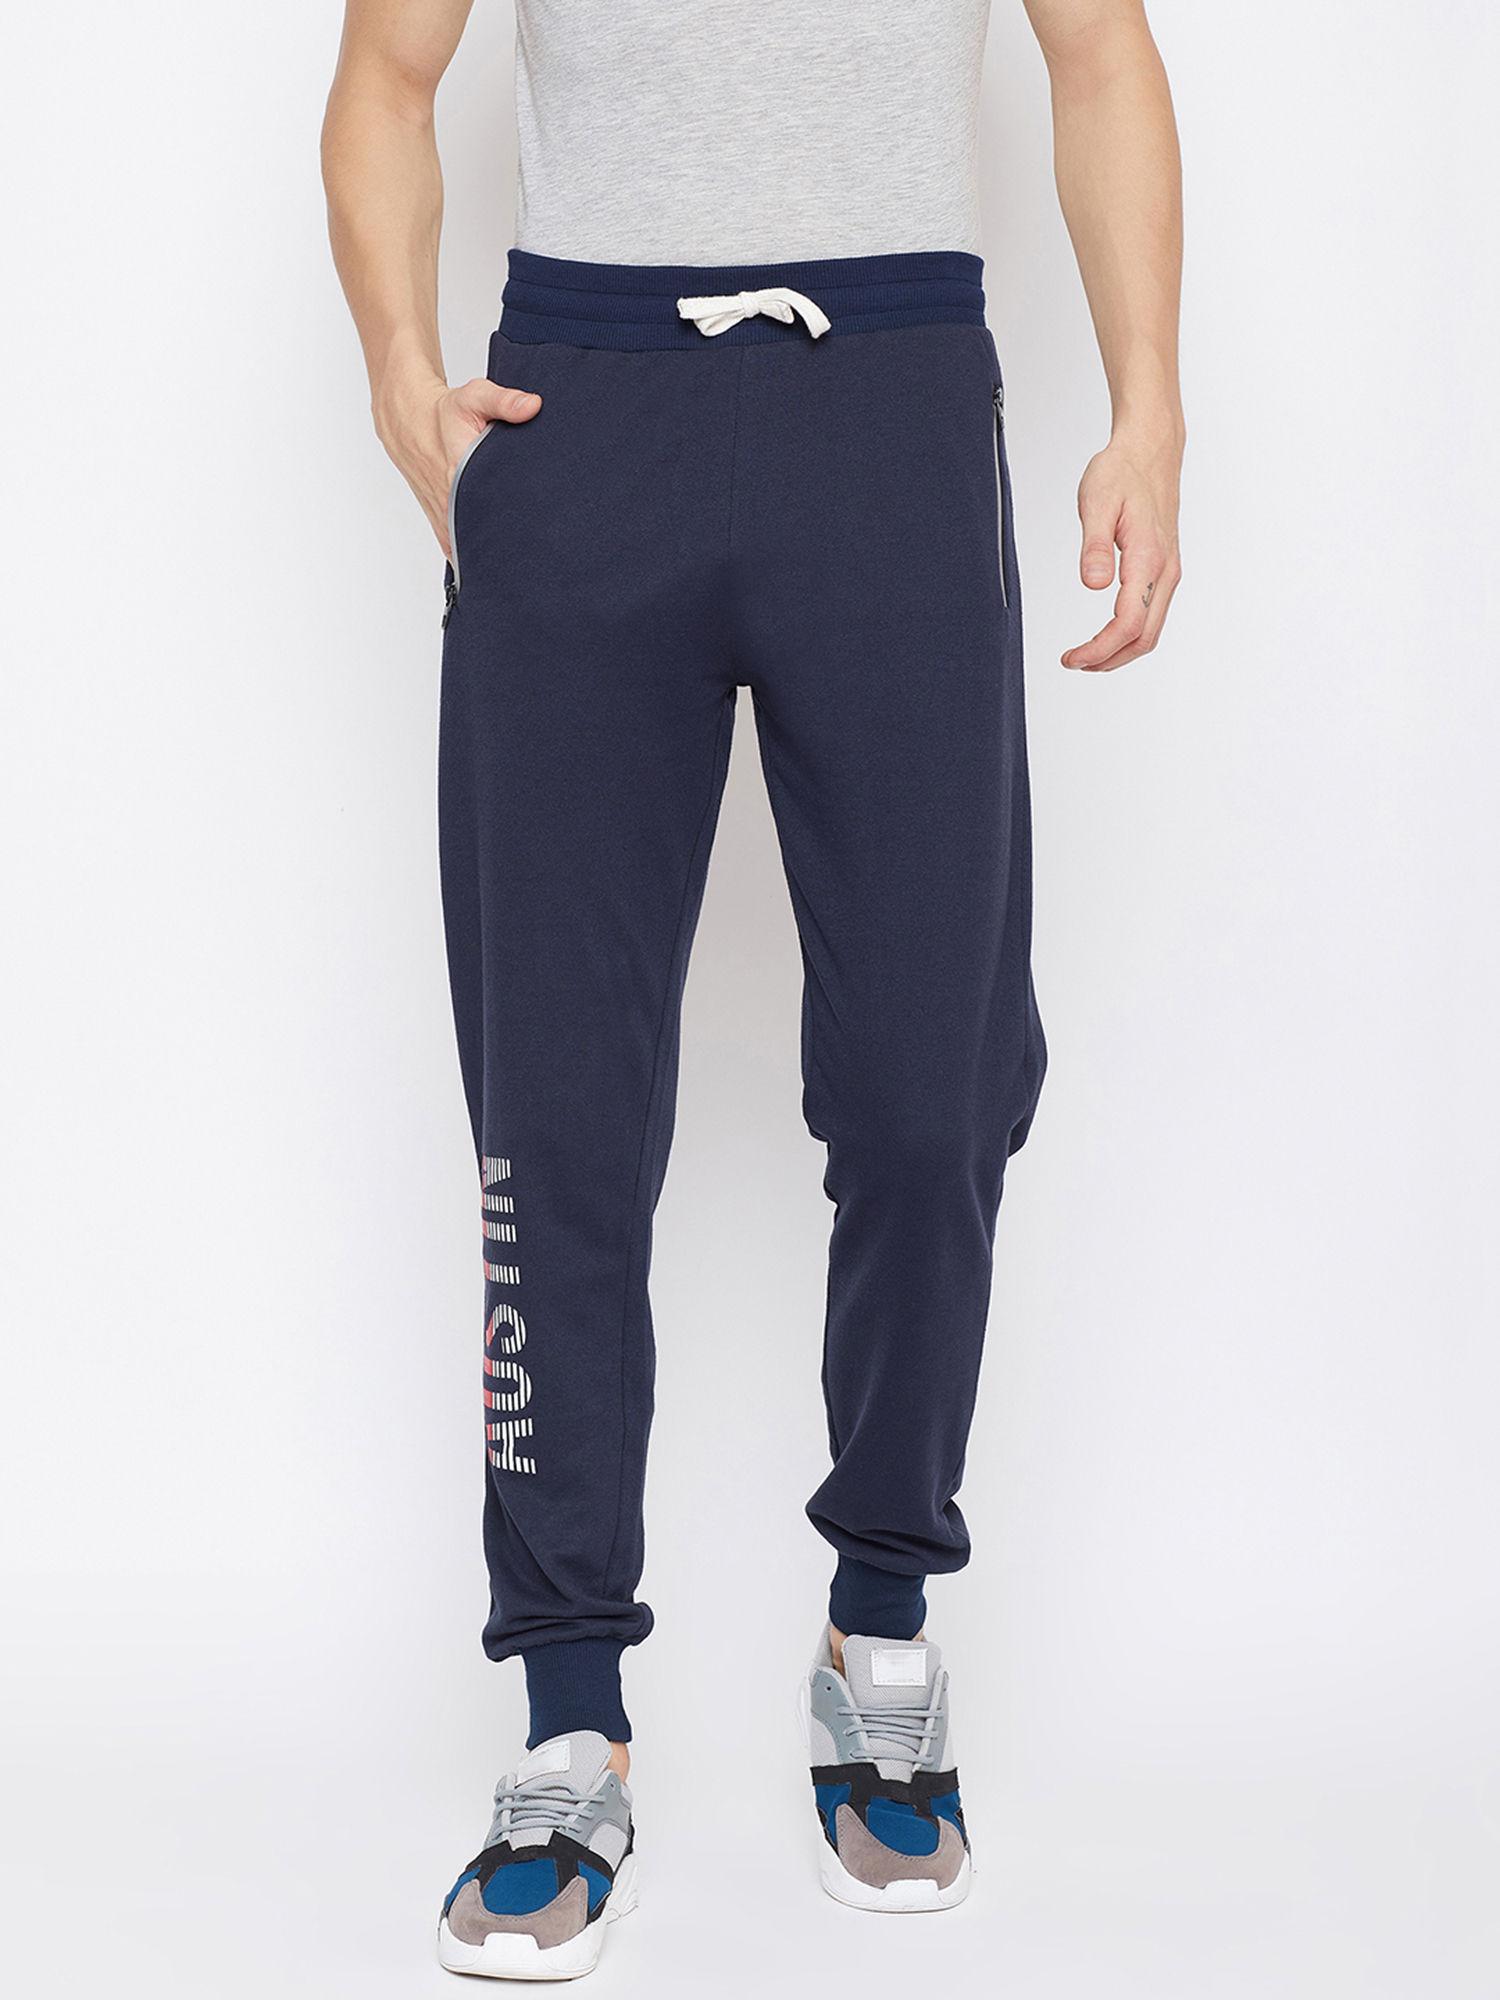 navy blue printed slim fit track pants